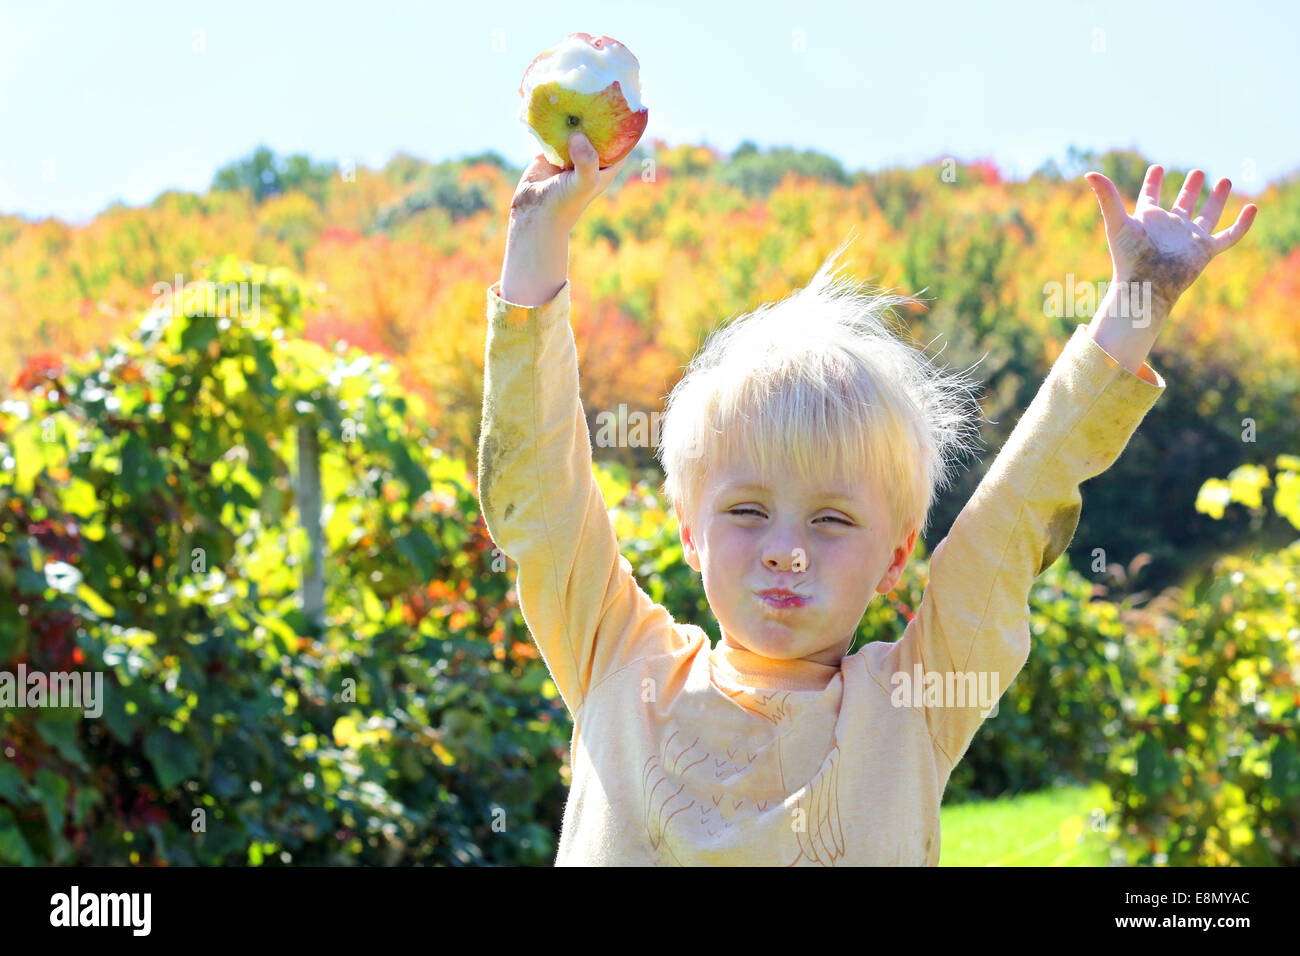 Un jeune enfant est en levant les bras en l'air comme il mange des fruits fraîchement récoltés dans un verger sur une journée d'automne ensoleillée. Banque D'Images